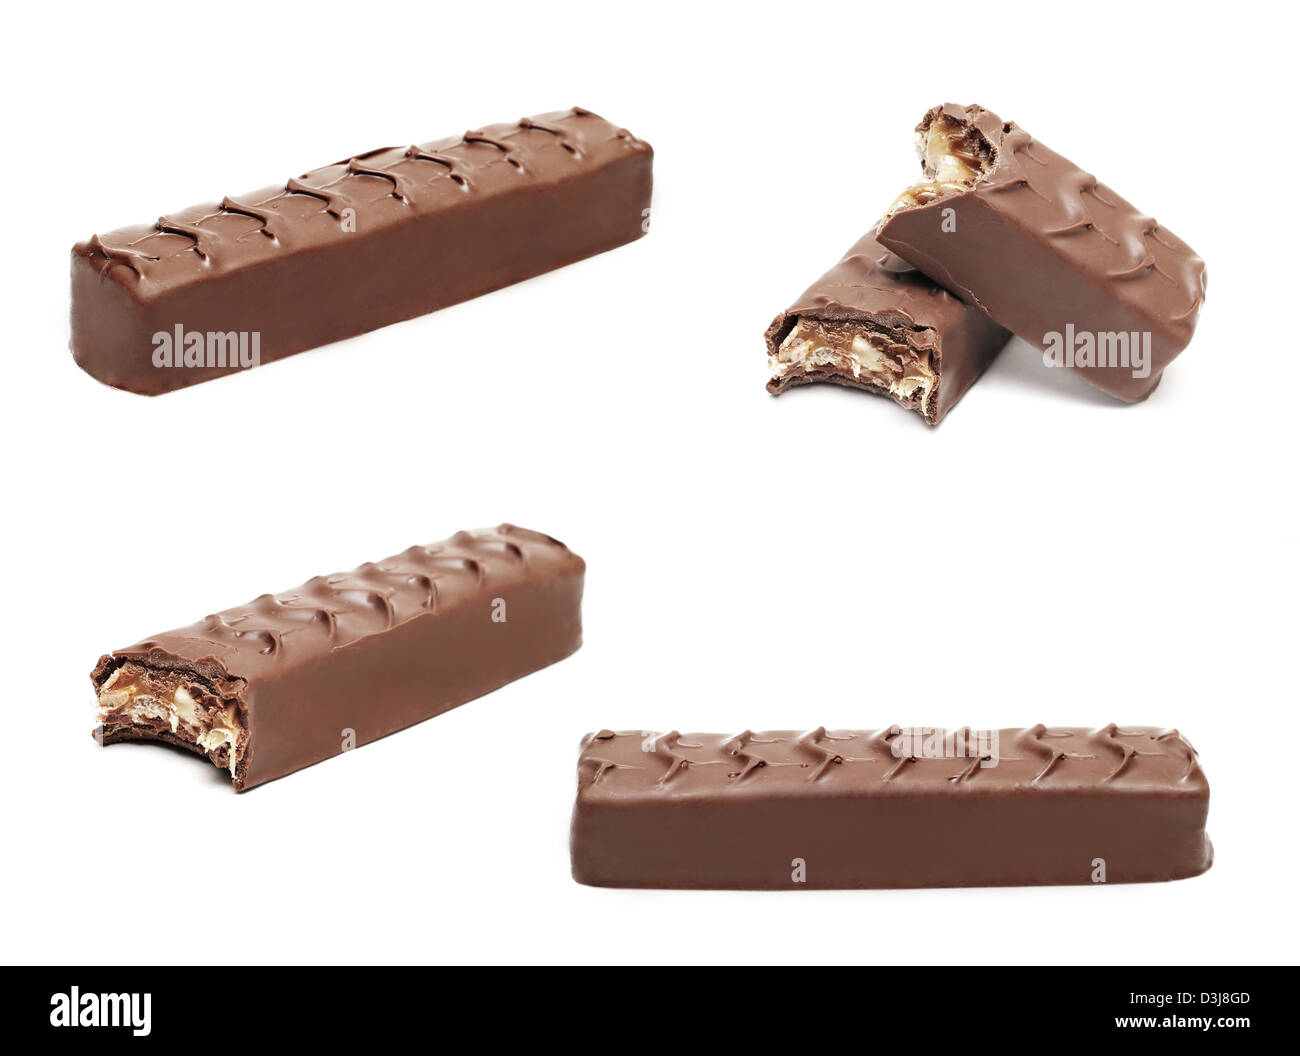 Chocolate bars set isolated on white background Stock Photo